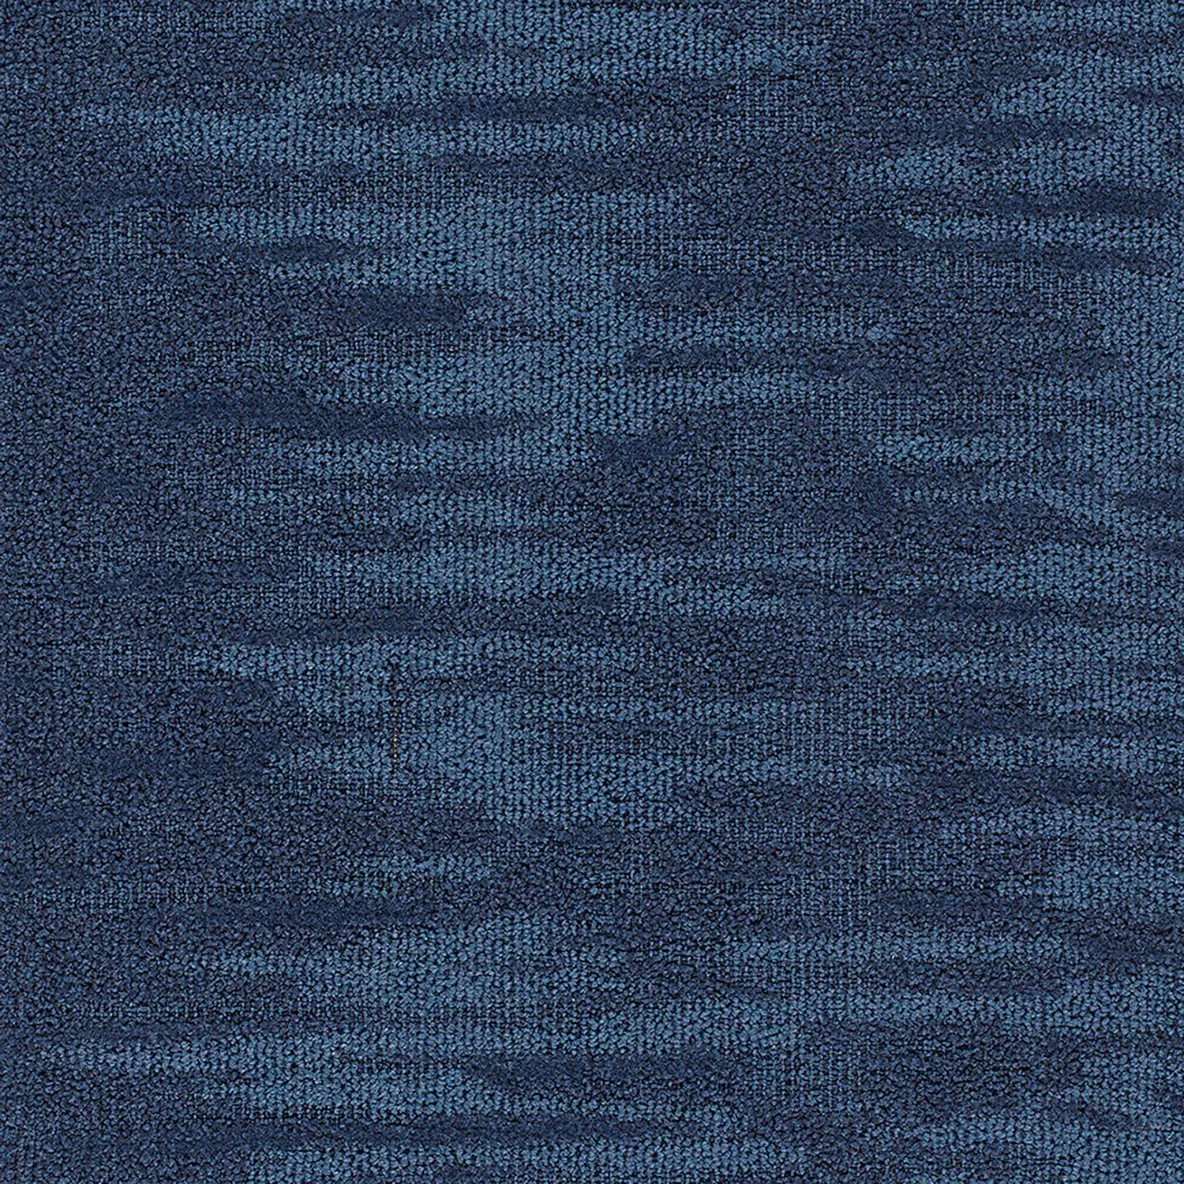 Prism Carpet Tile 1x1 Meter